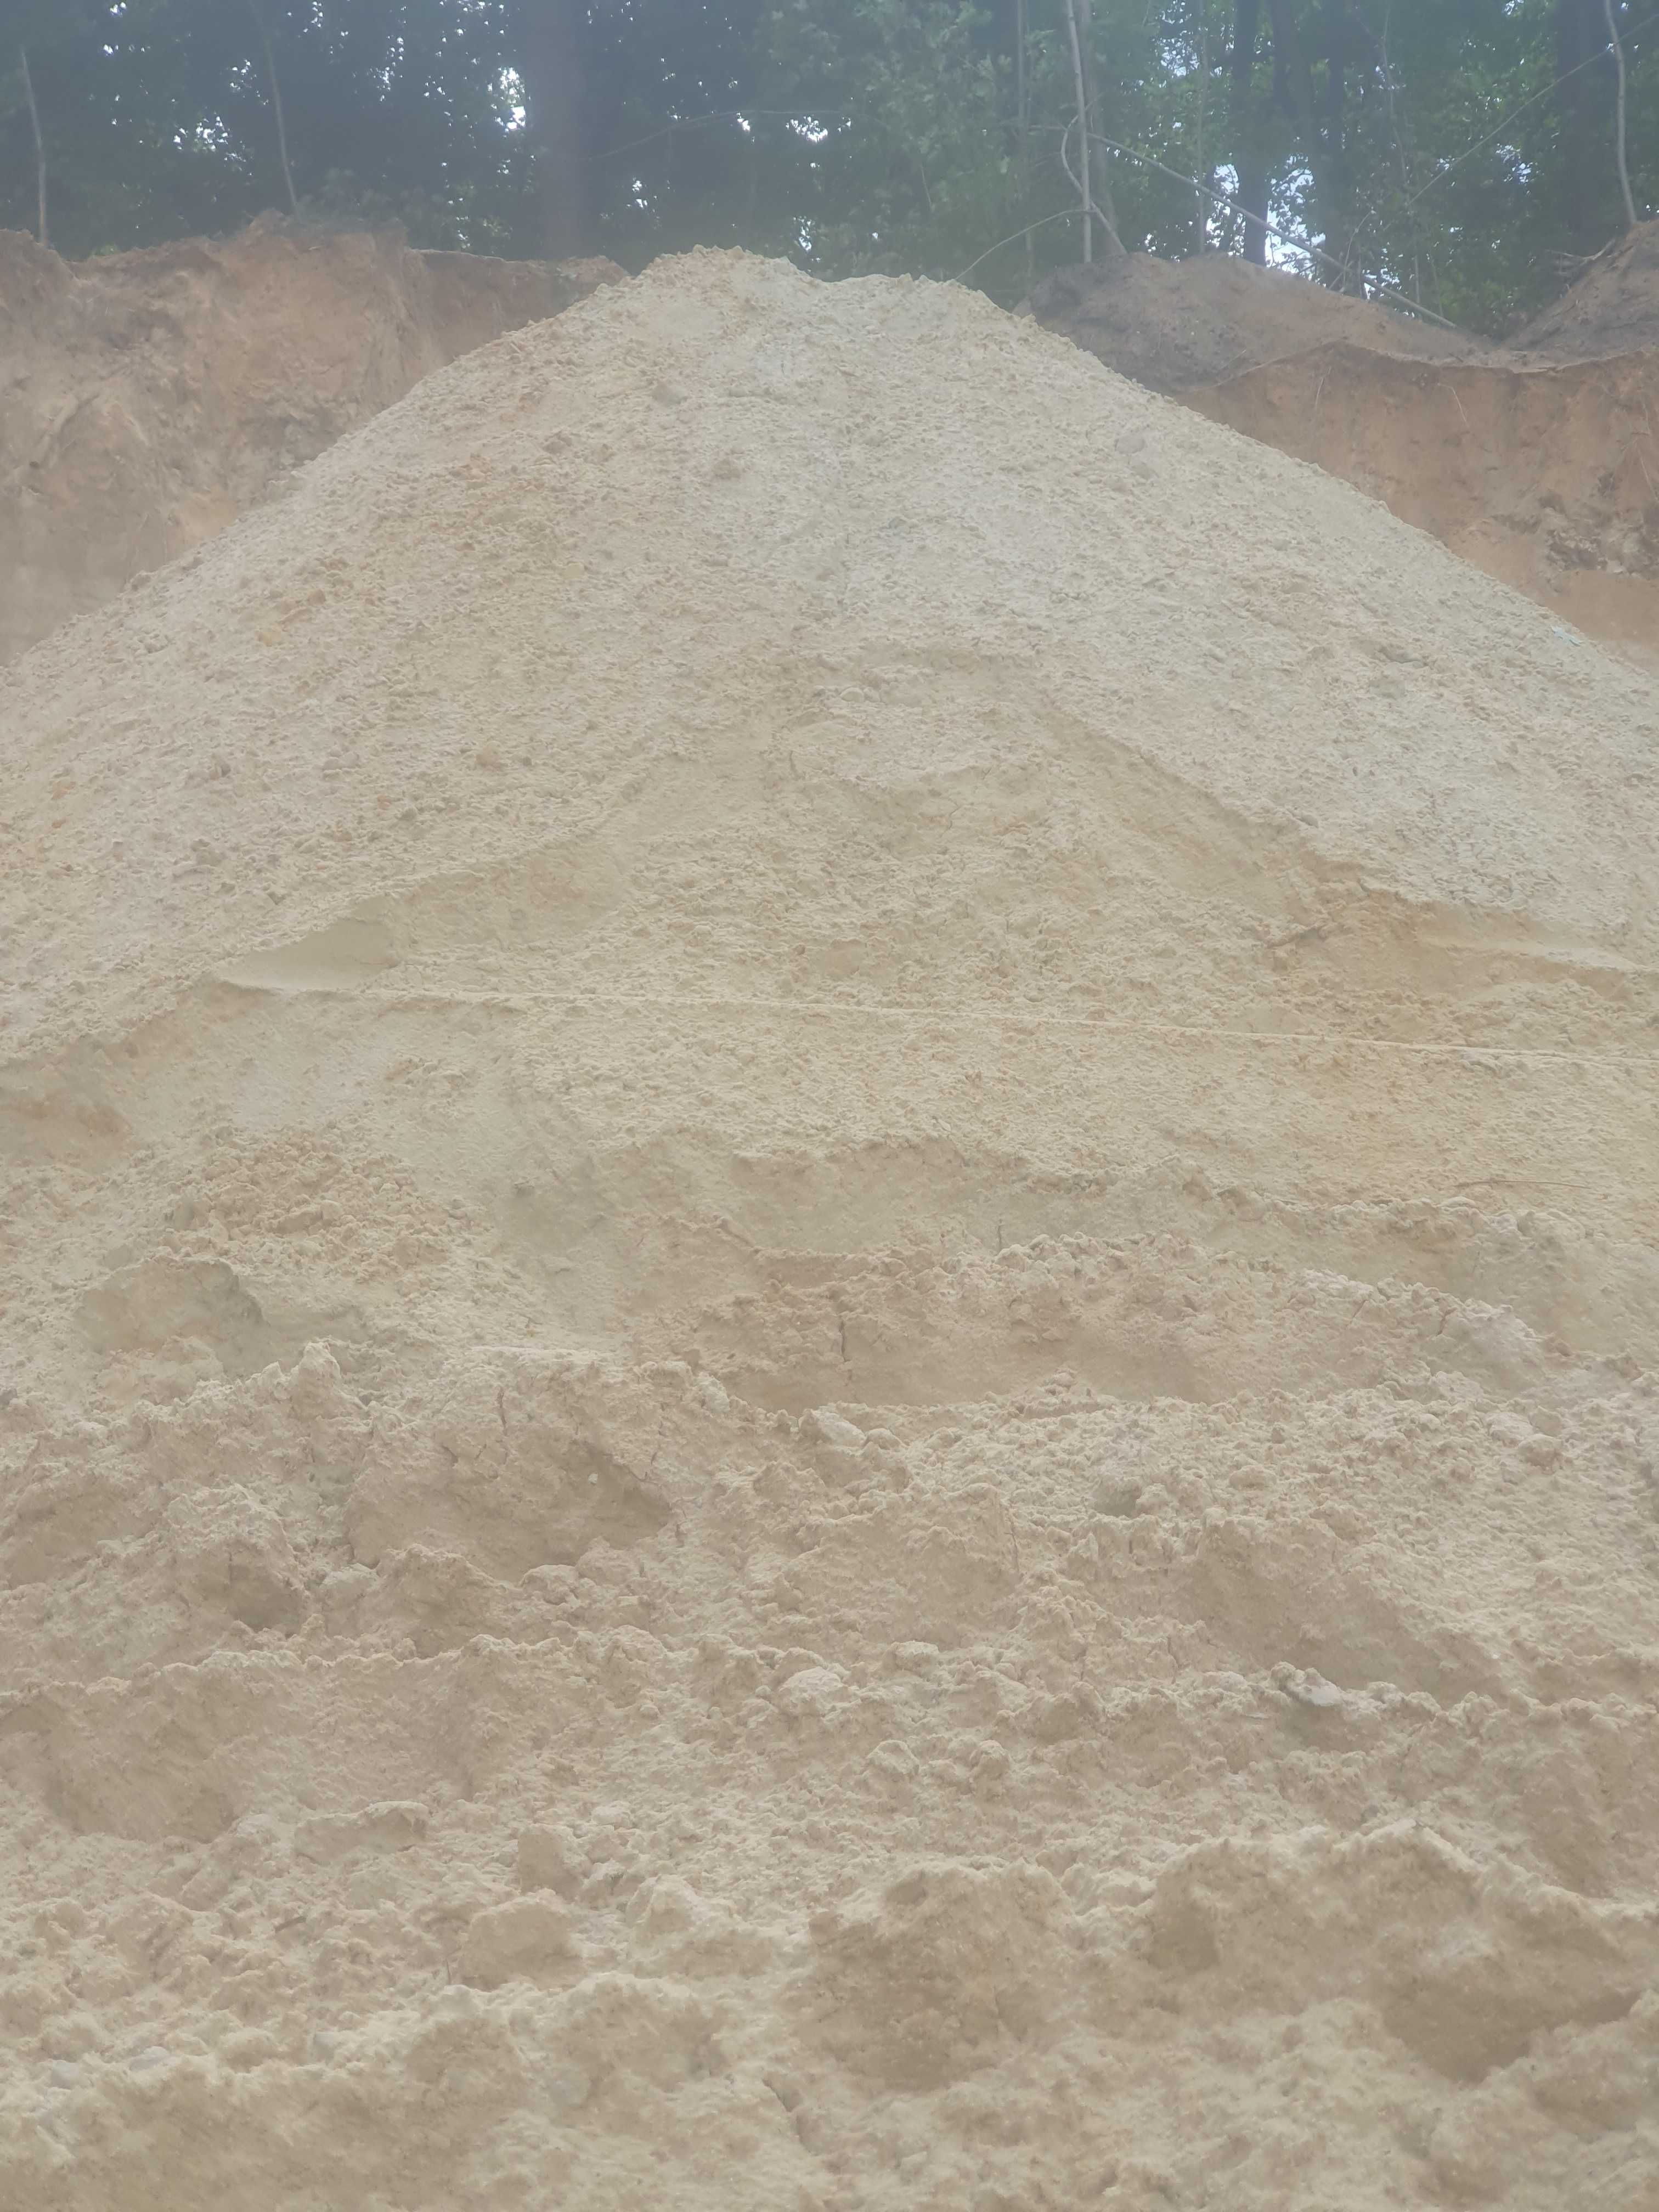 Piach zasypowy piasek czysty wywoz ziemi gruzu  abisynki studnie